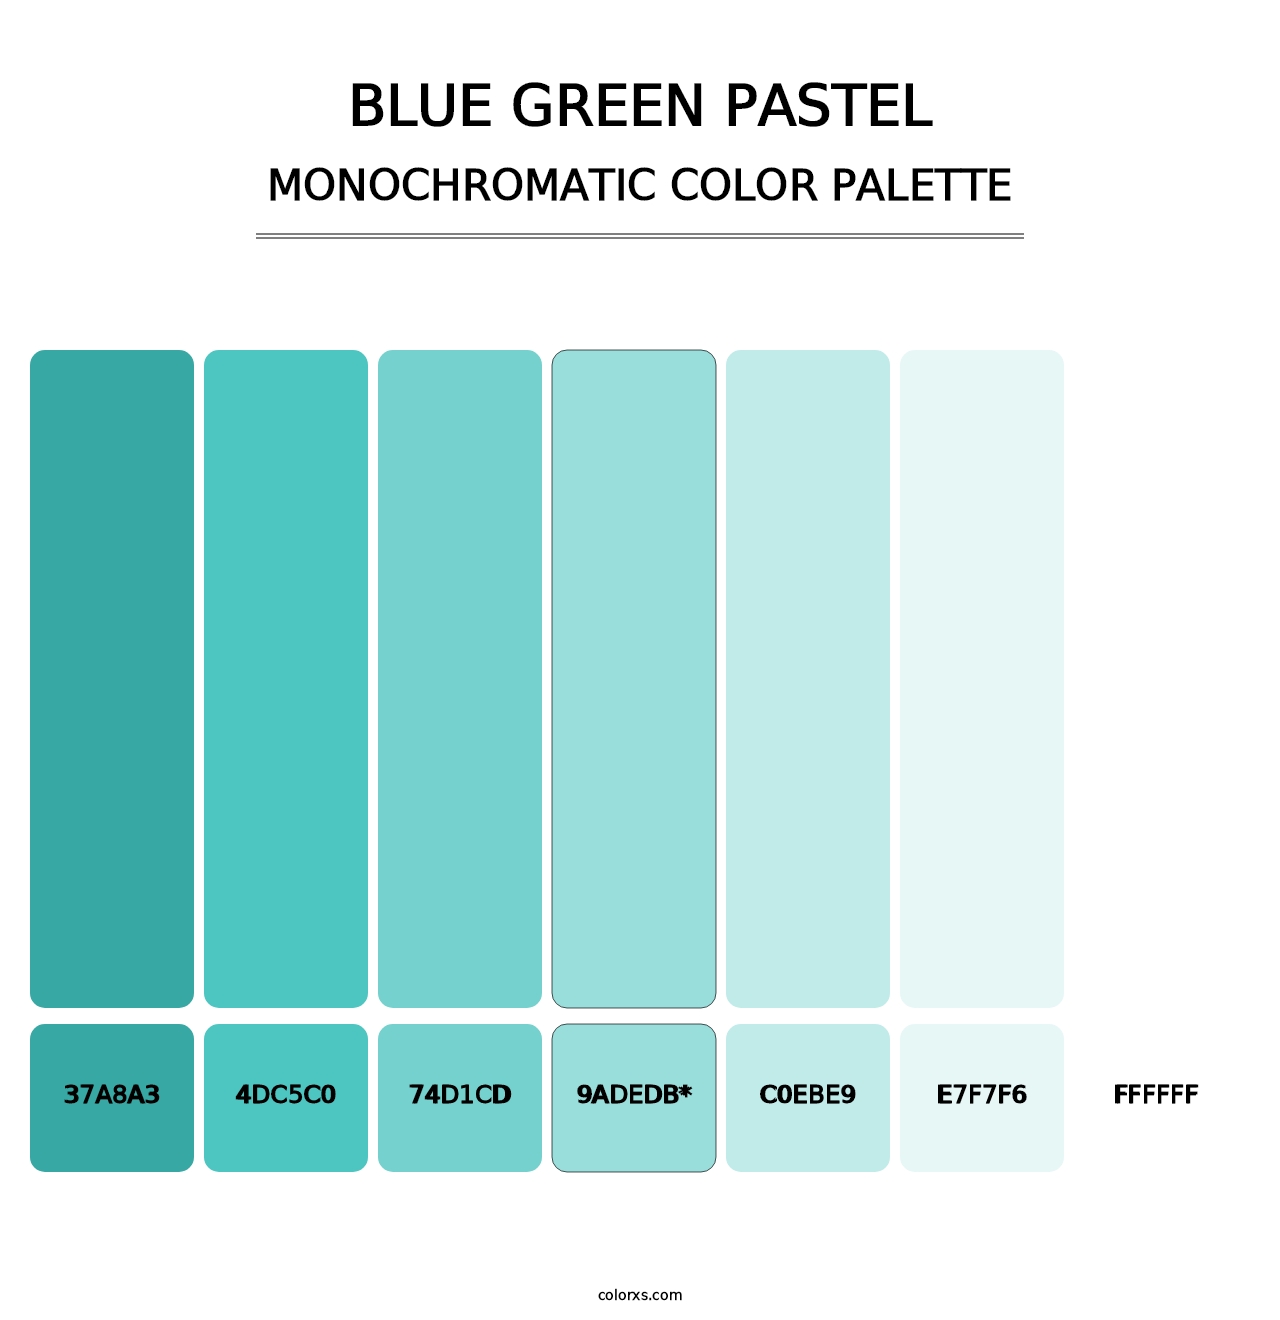 Blue Green Pastel - Monochromatic Color Palette